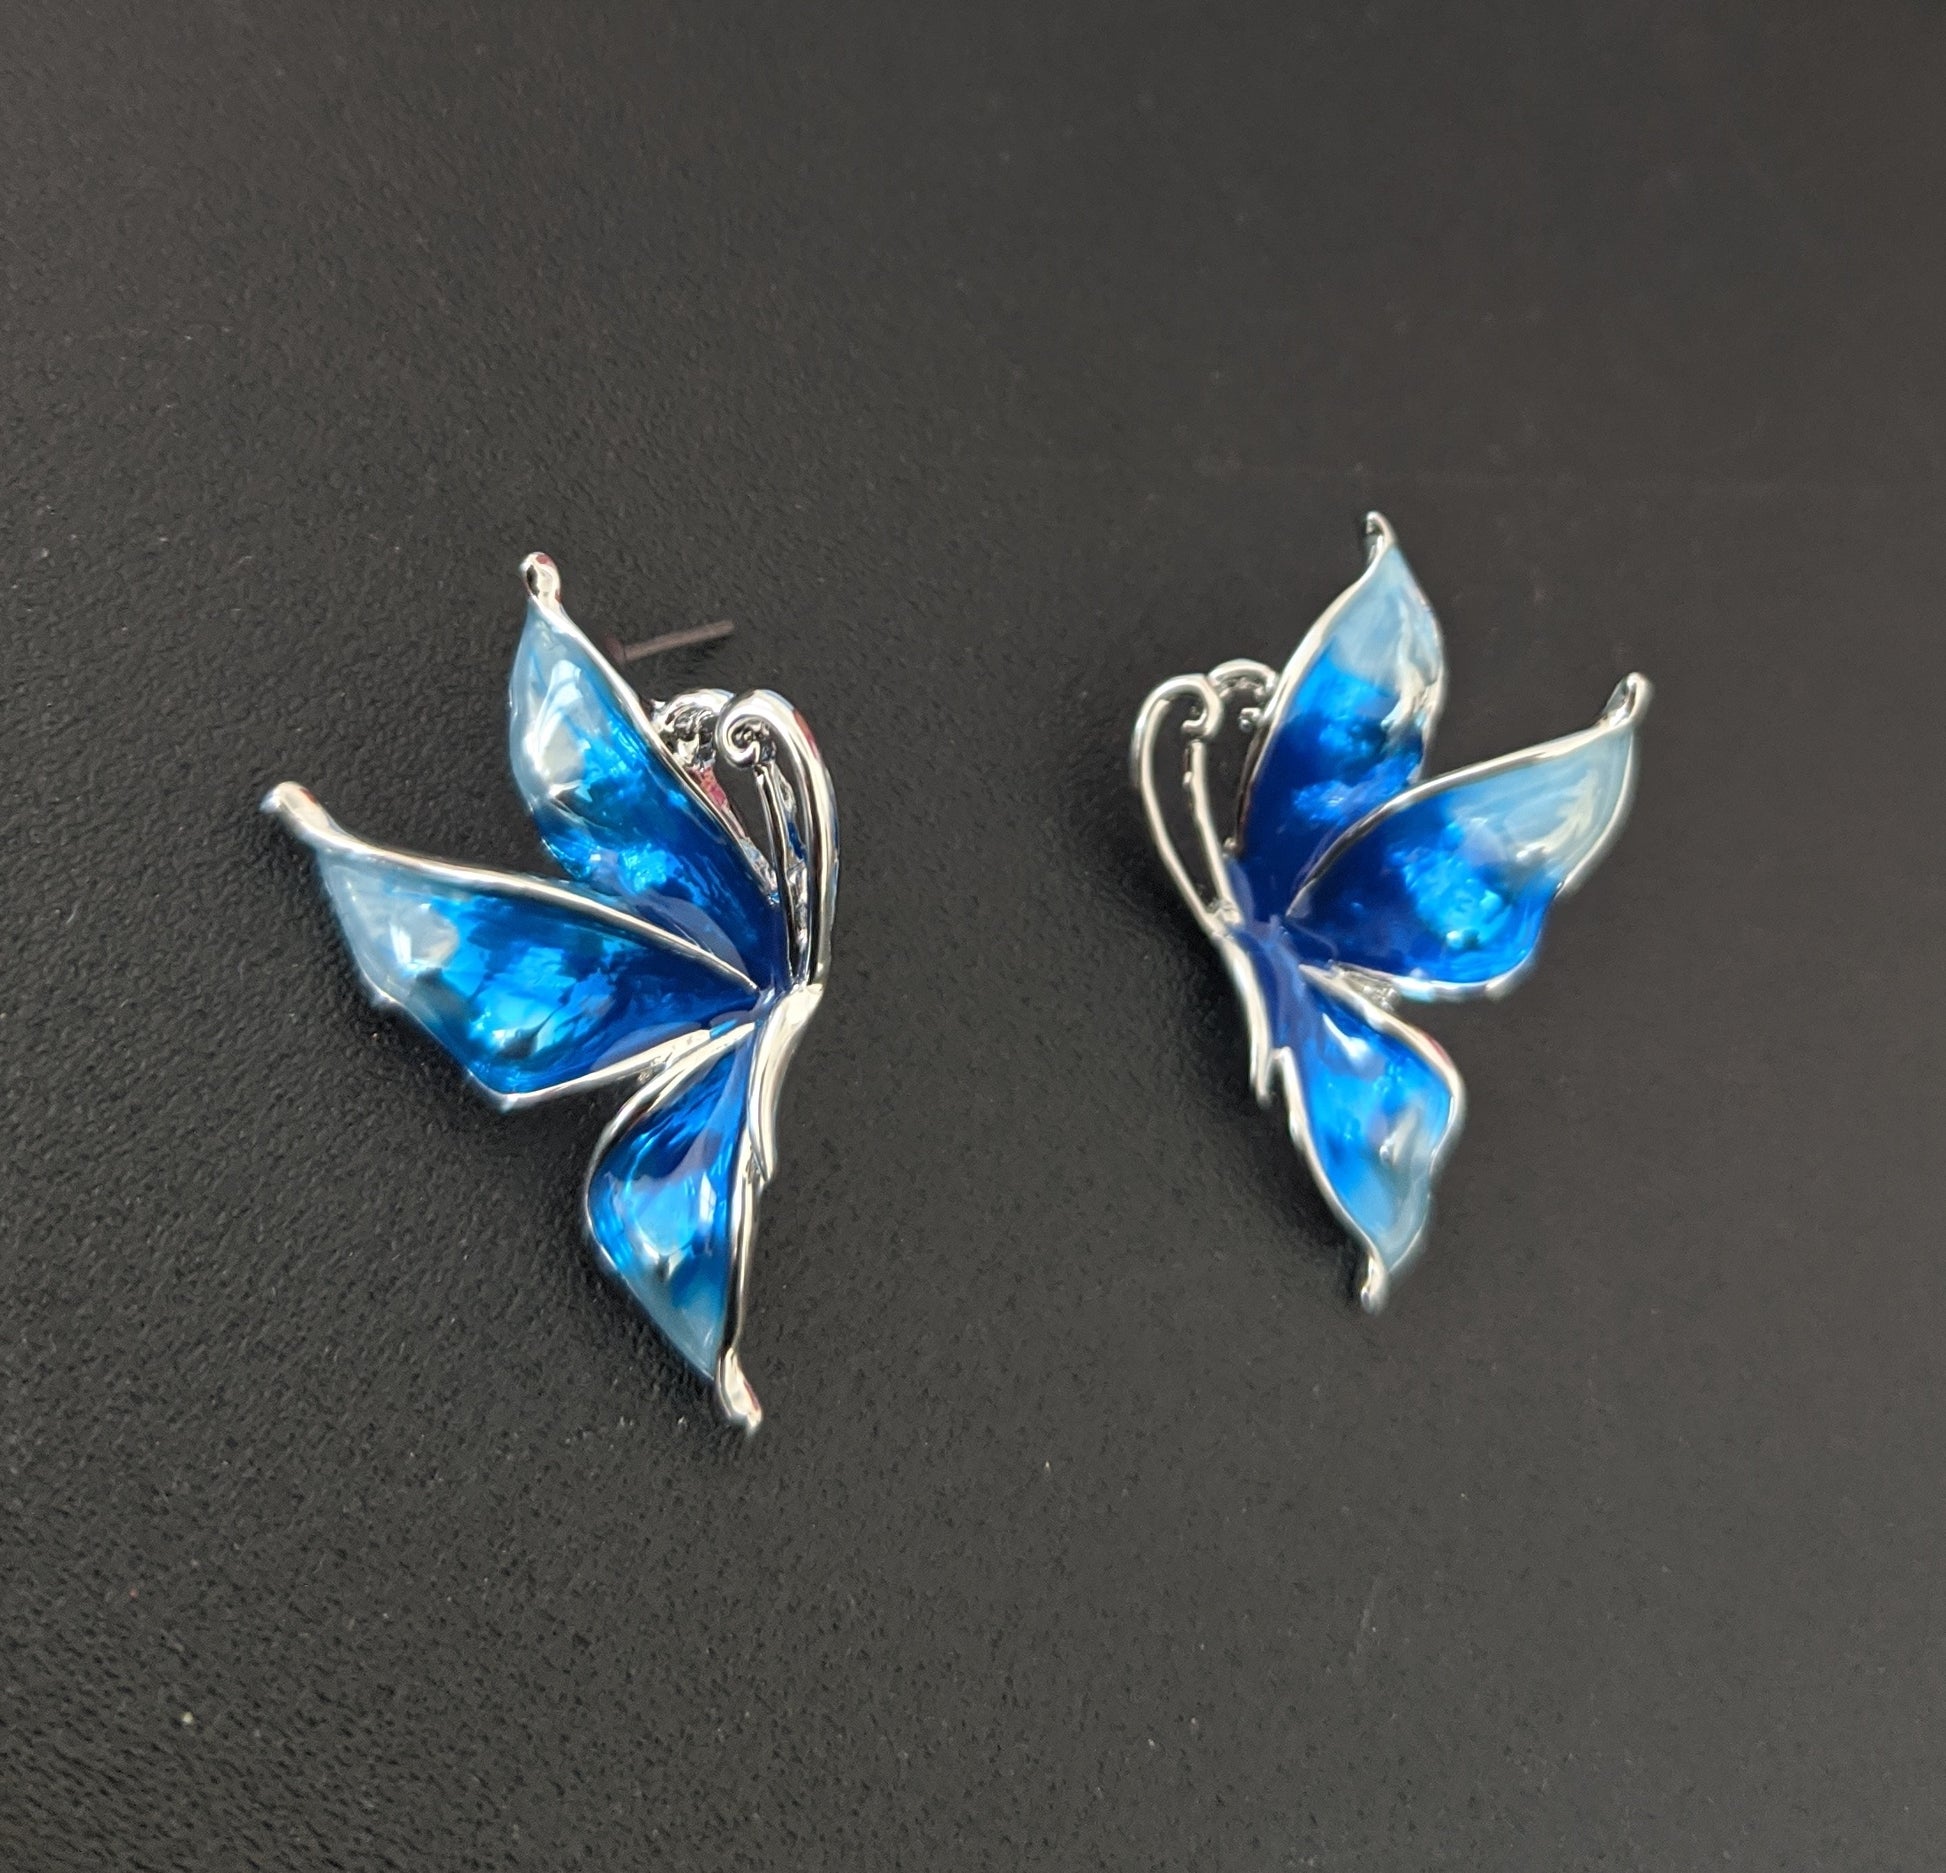 Enamel work platinum finish butterfly stud earring - Simpliful